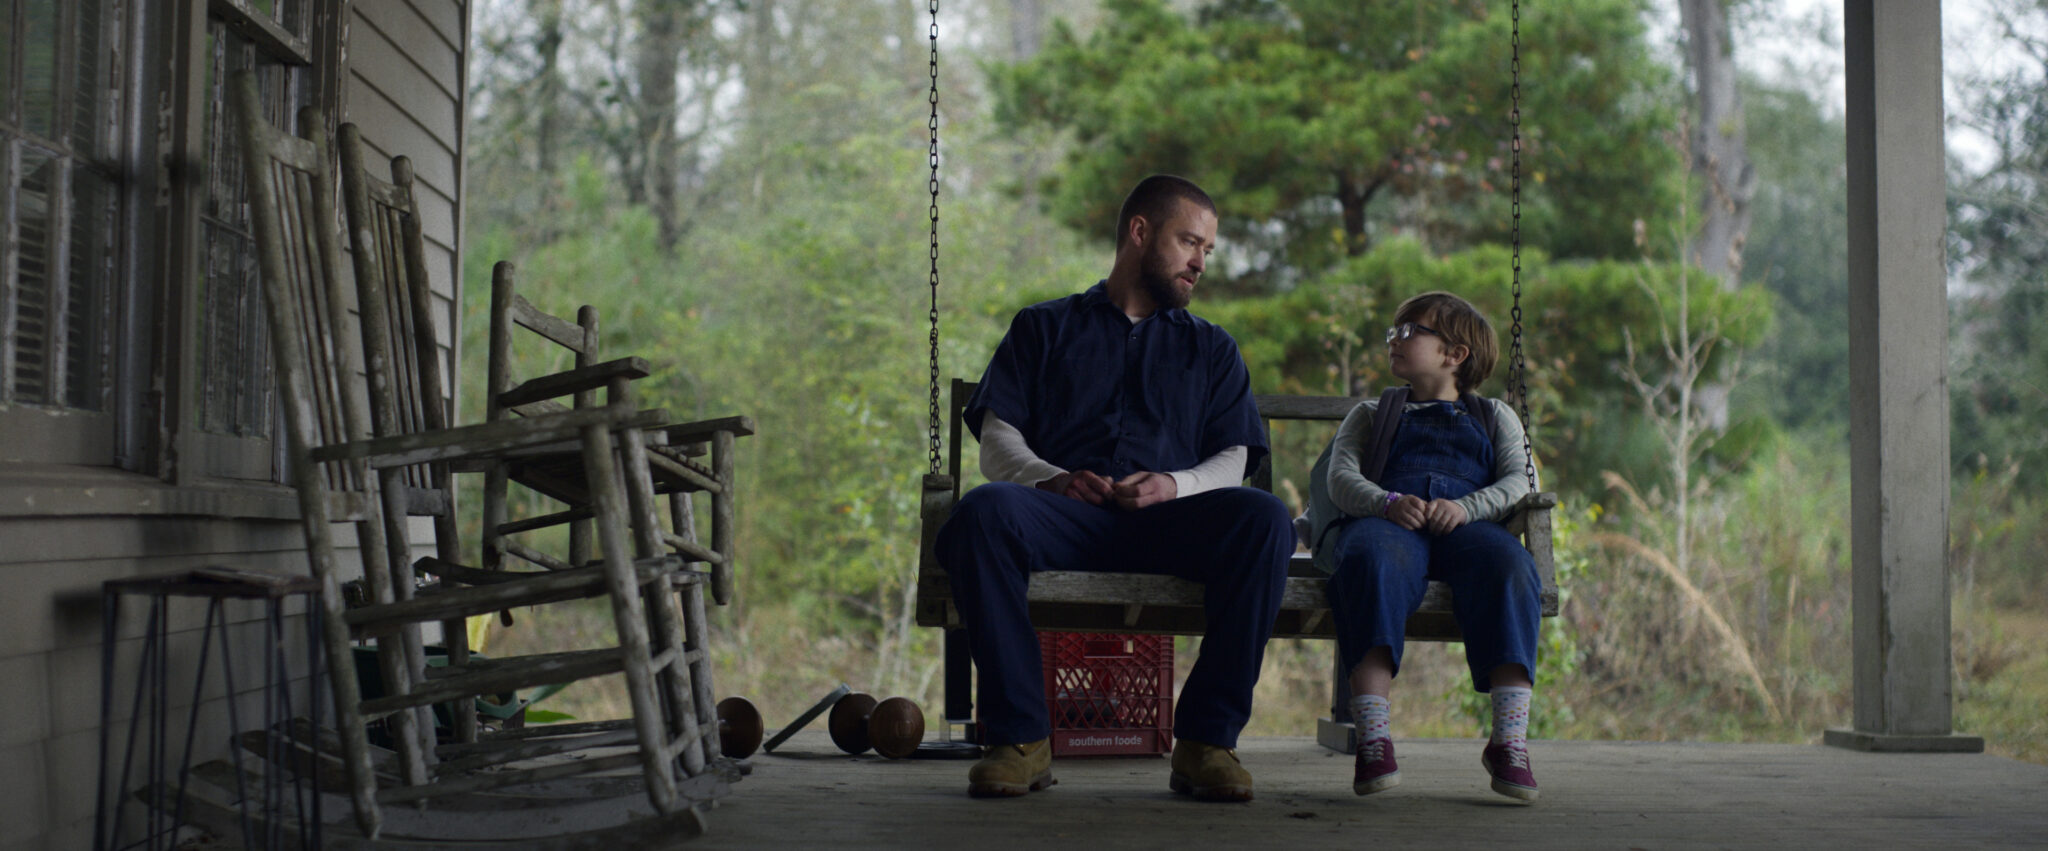 Justin Timberlake zusammen mit einem kleinen Jungen auf einer Schaukel sitzend auf einer Veranda.